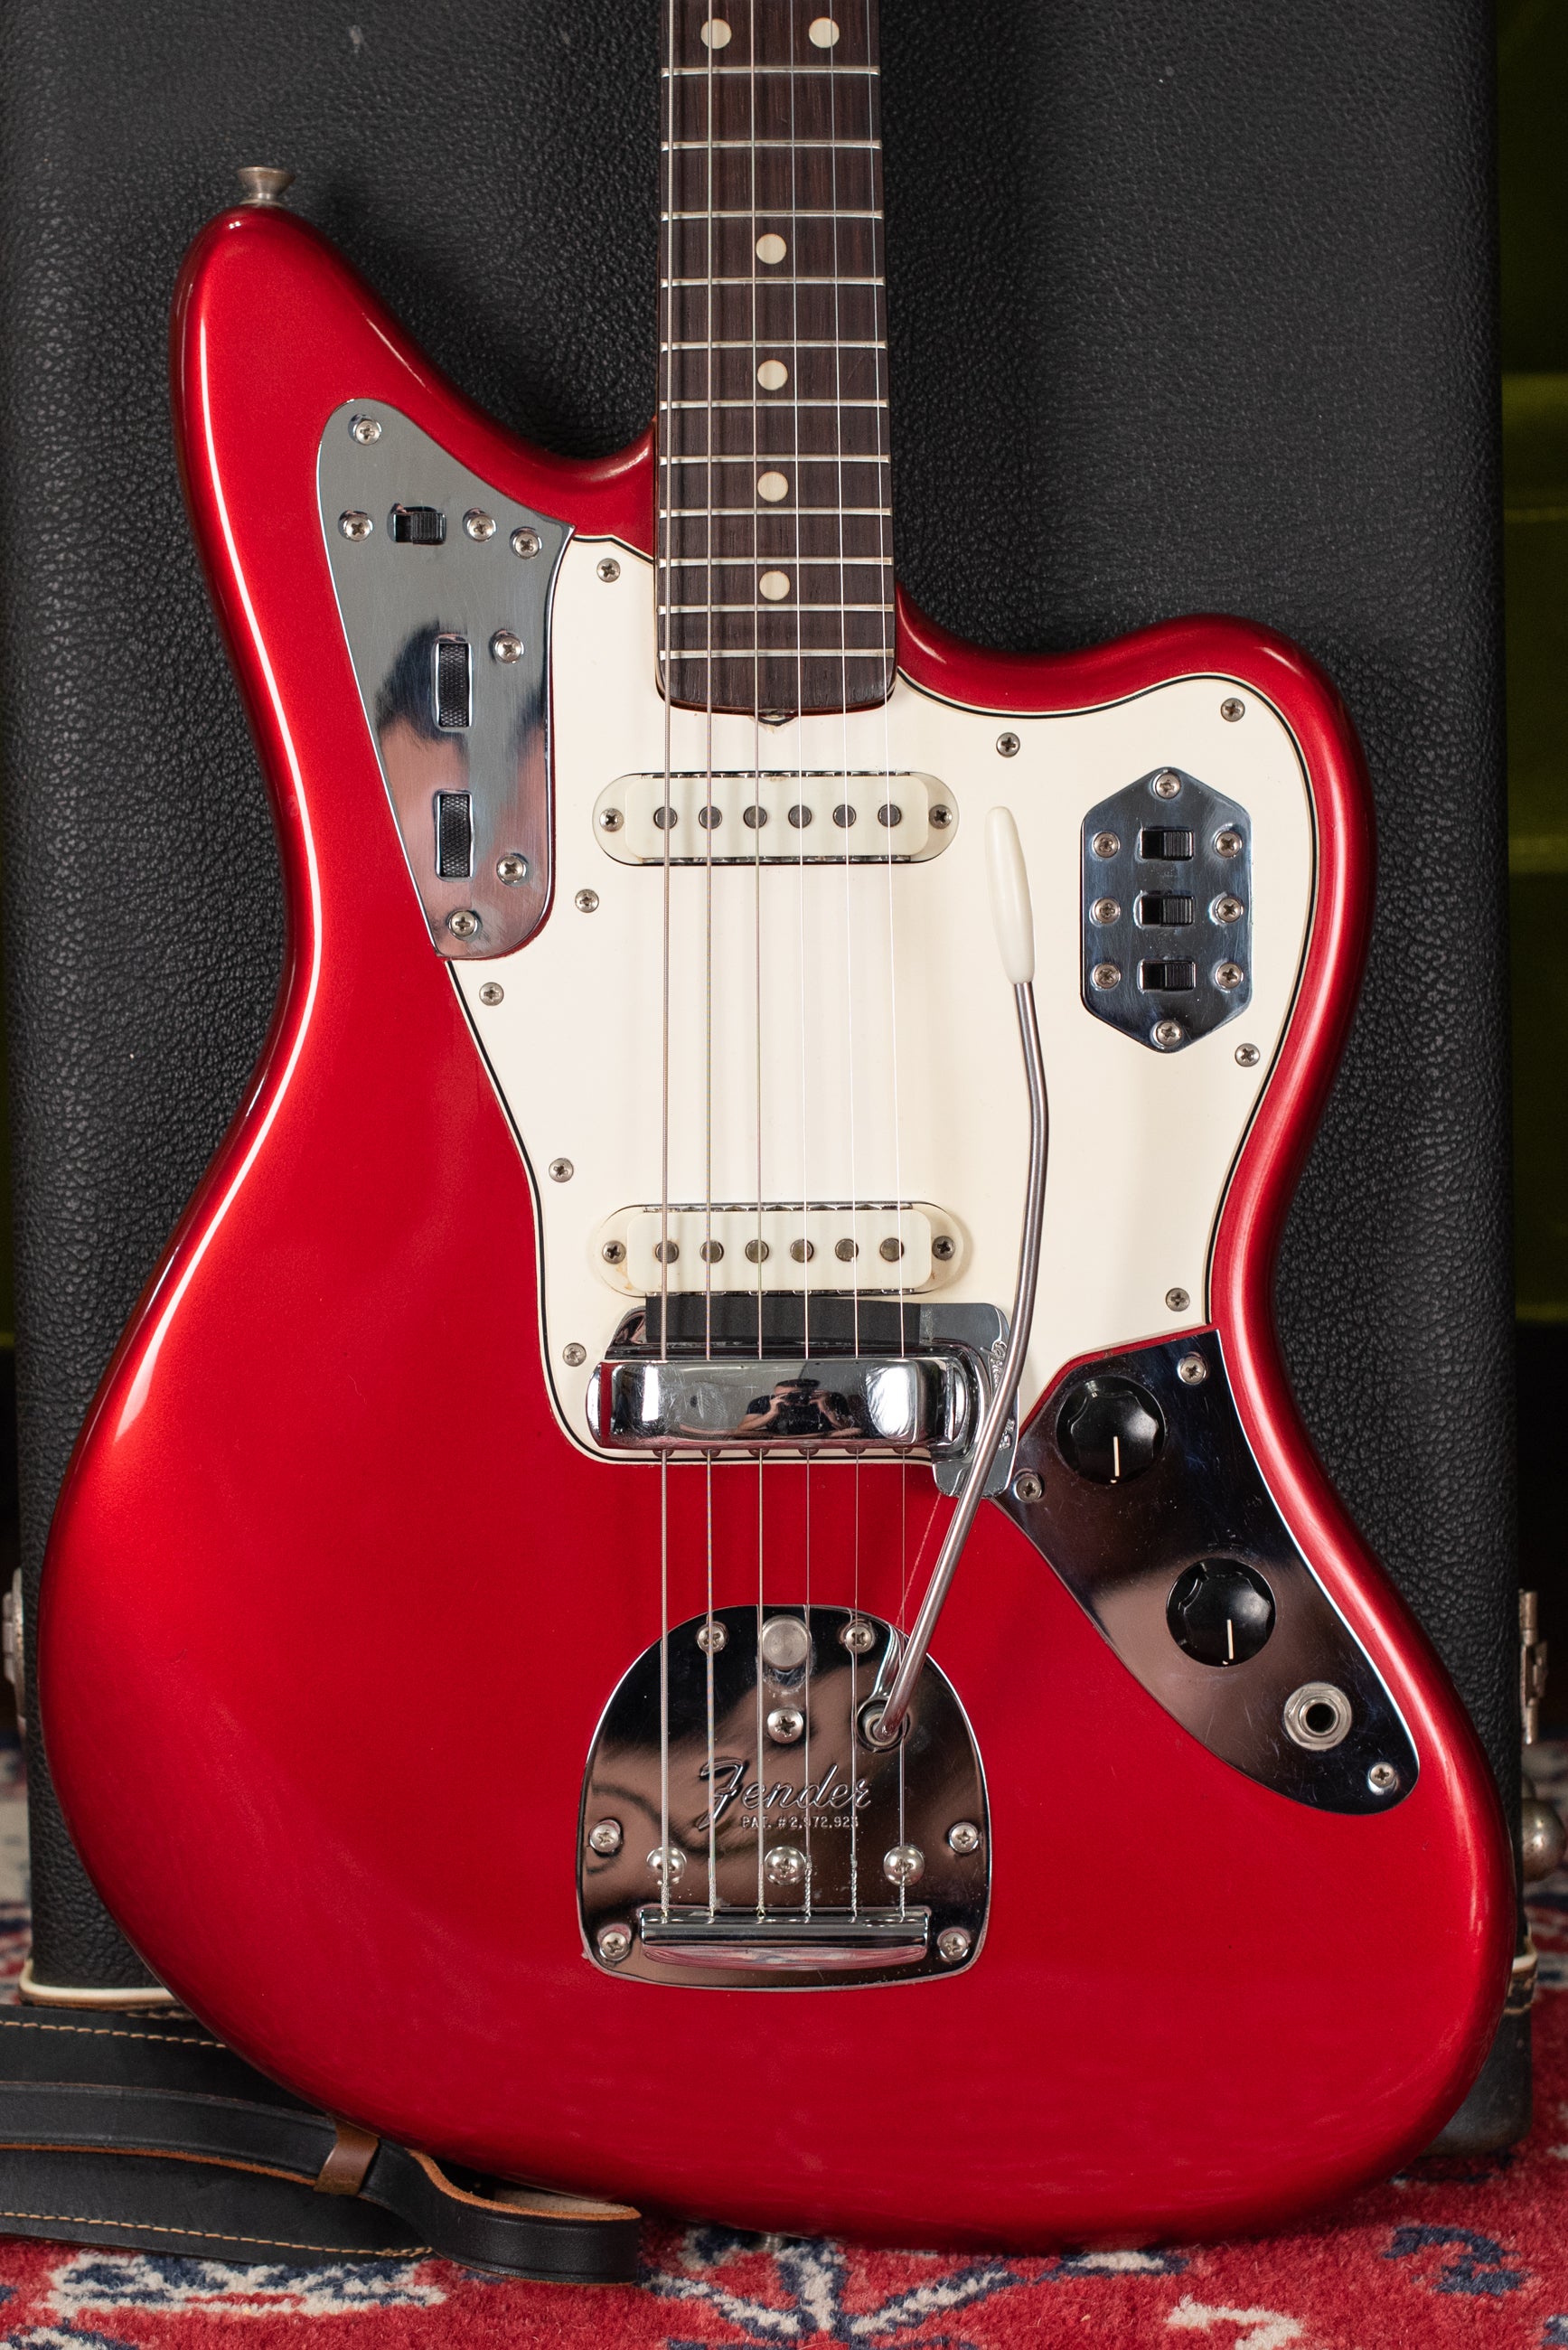 Vintage 1965 Fender Jaguar Red guitar